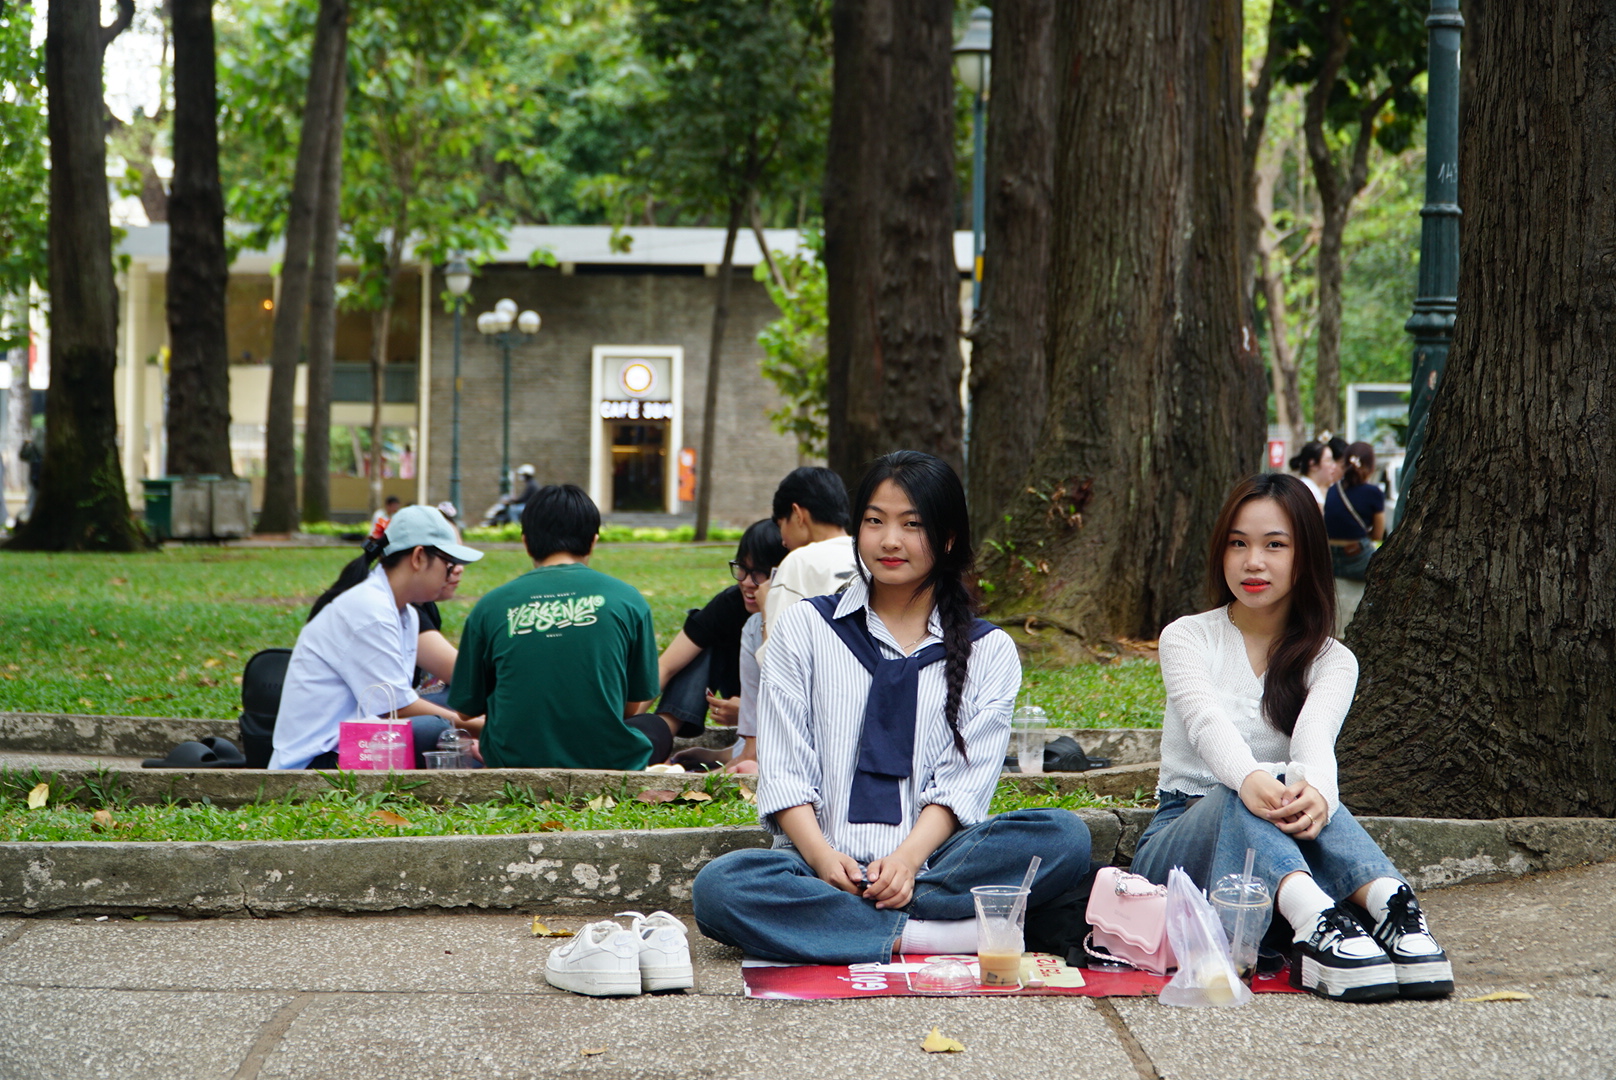 Thay vì chọn các quán cà phê máy lạnh, nhiều sinh viên chọn cà phê bệt và ngồi dưới những bóng cây